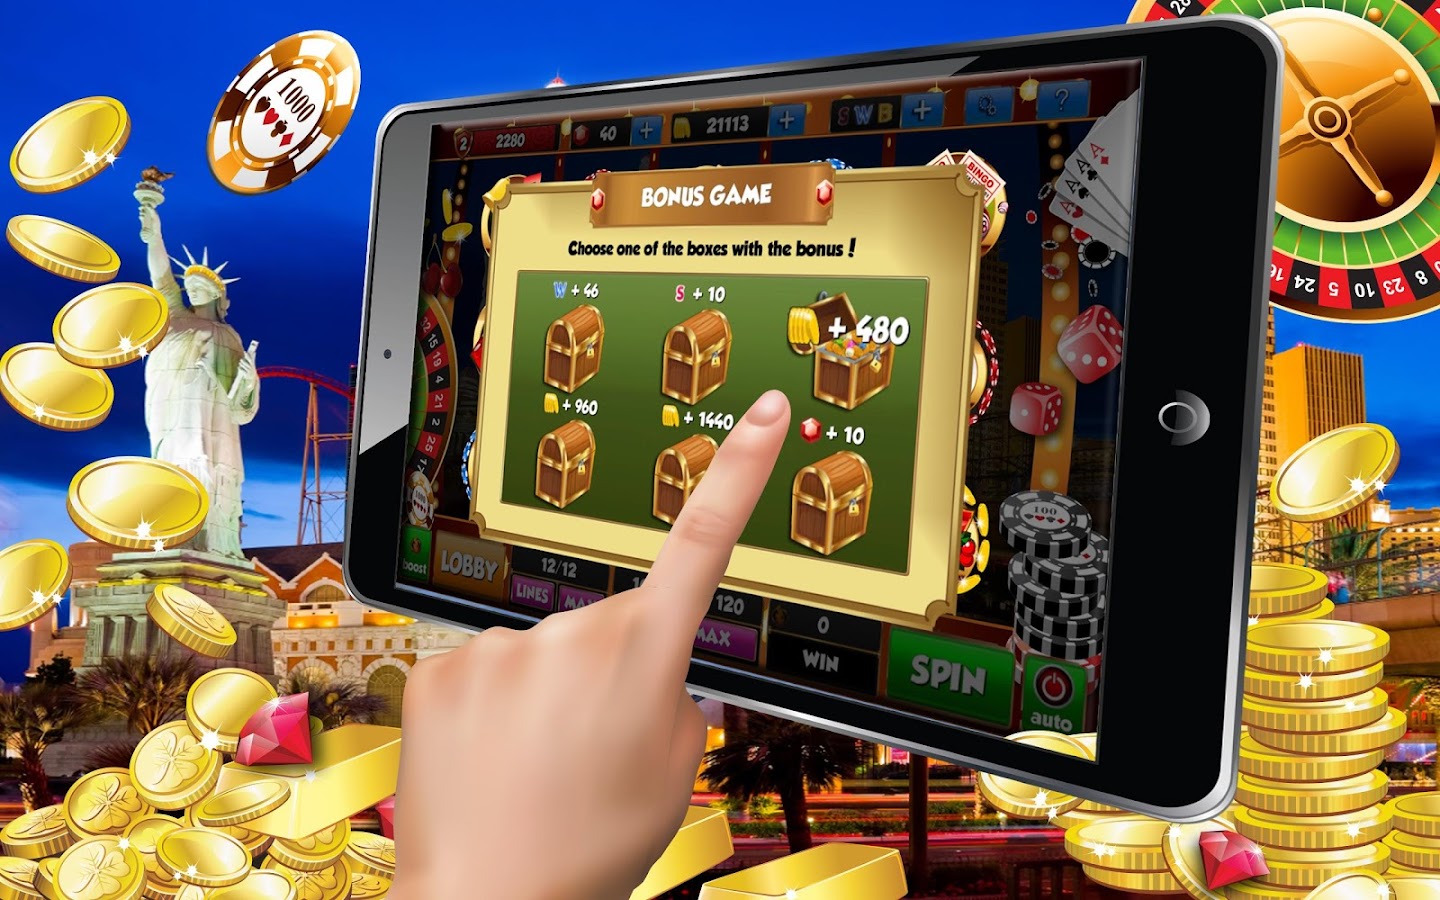 Рейтинг онлайн казино андроид подборка лучших бонд казино рояль смотреть онлайн бесплатно в хорошем качестве hd 720